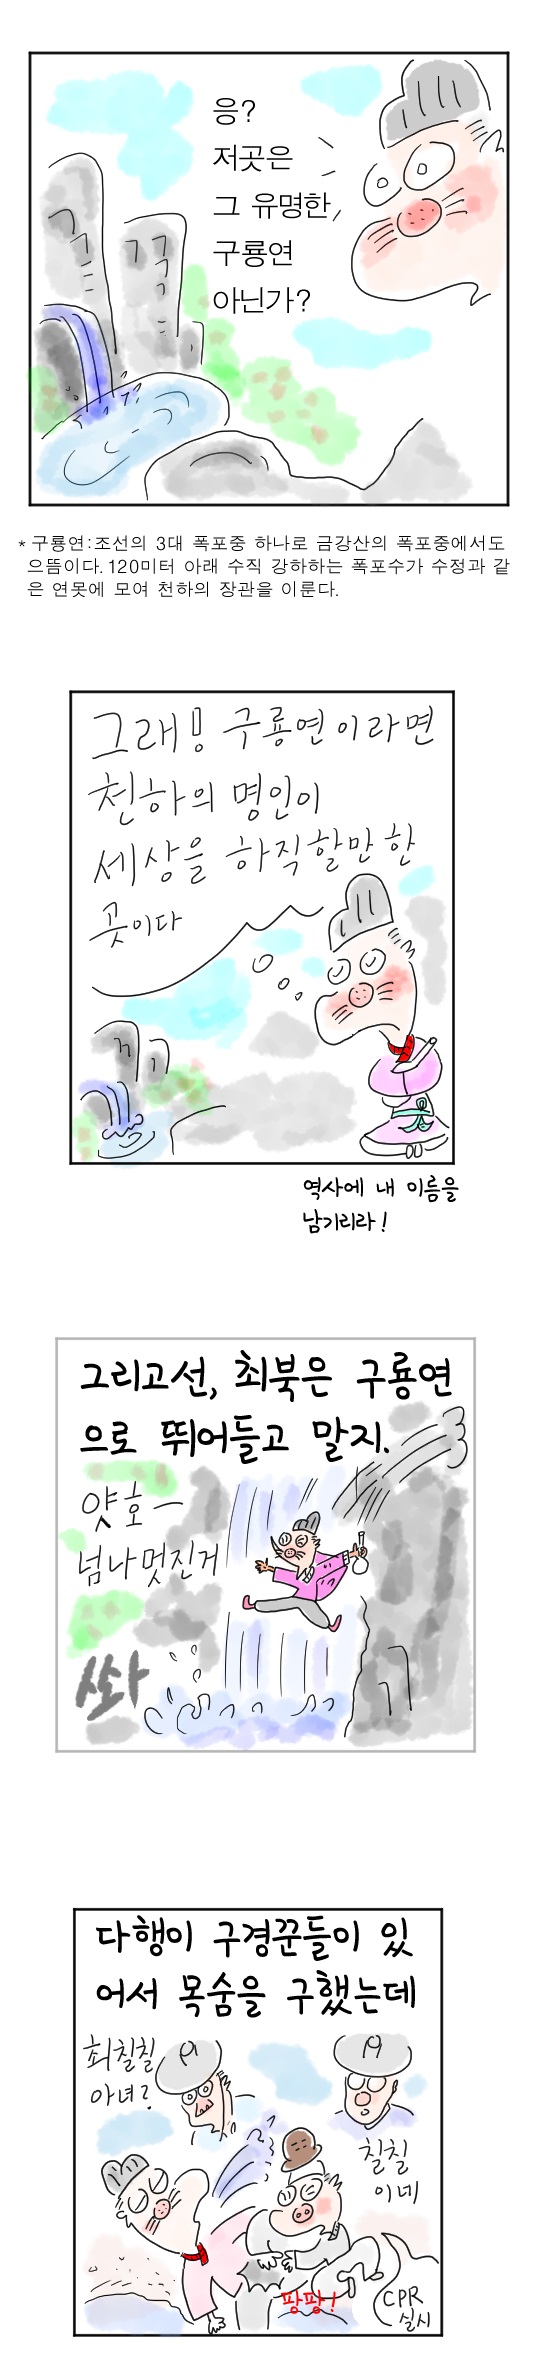 [역사툰] 史(사)람 이야기 21화: 광기의 천재 화가, 최북
